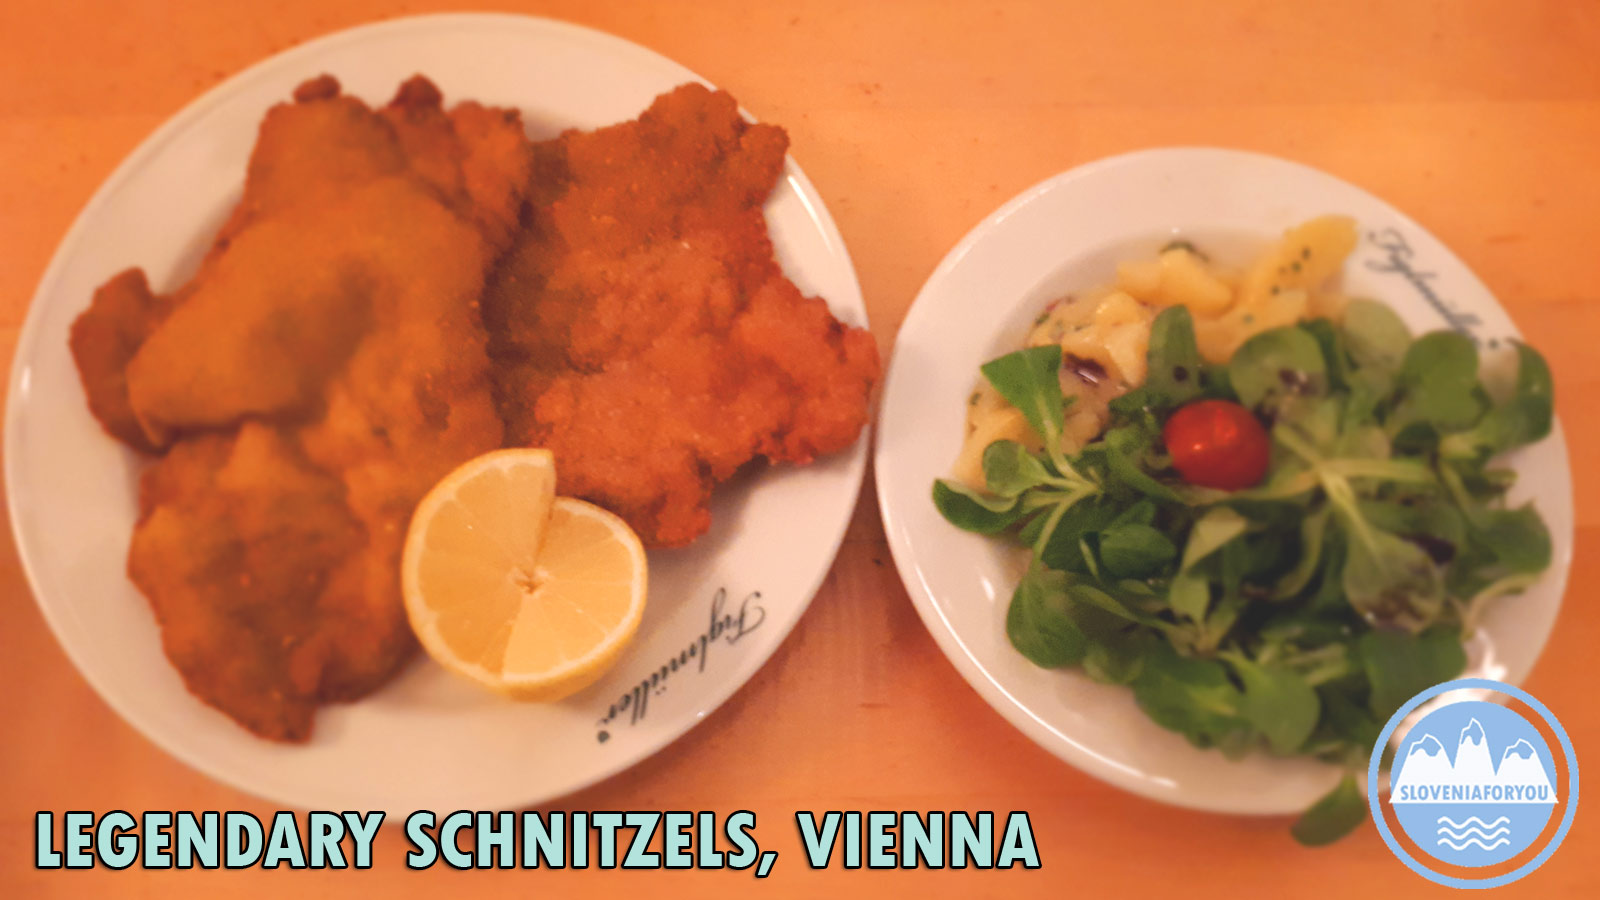 Weiner Schnitzel, Vienna, Sloveniaforyou